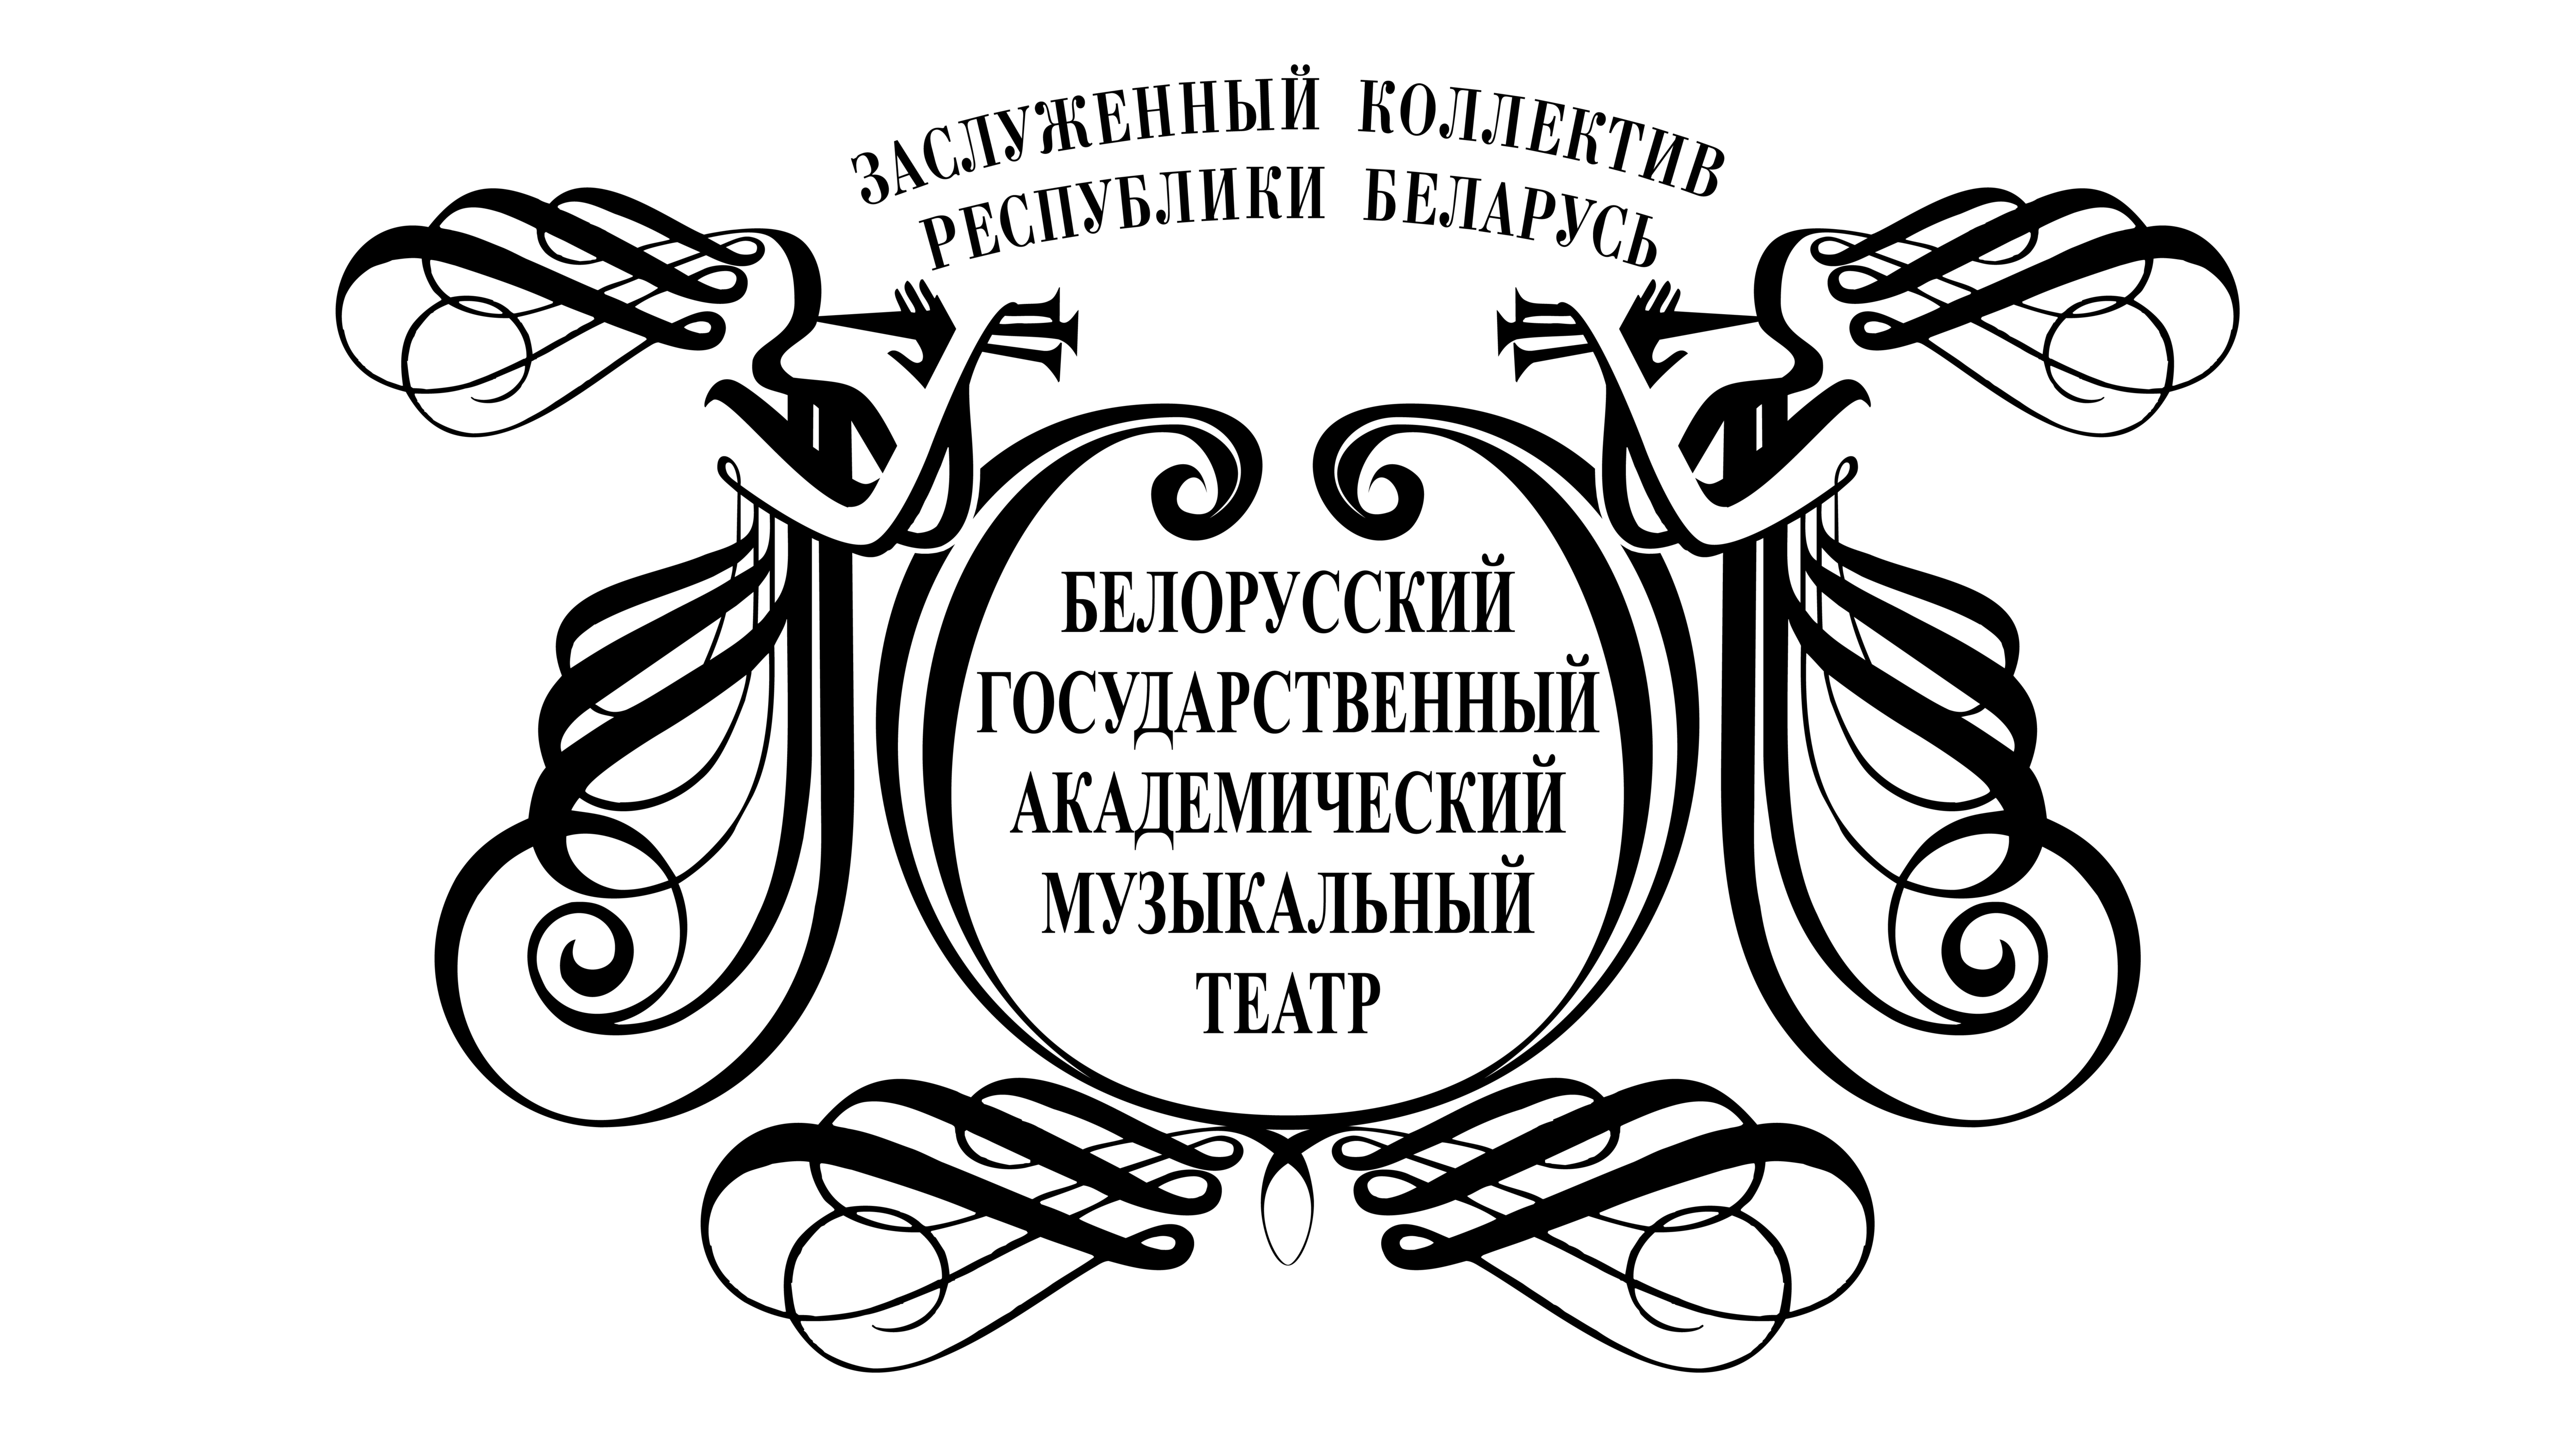 Белорусский государственный академический театр. Белорусский театр музыкальной комедии. Академический музыкальный театр. Белорусский государственный Академический музыкальный театр. Логотип музыкального театра.